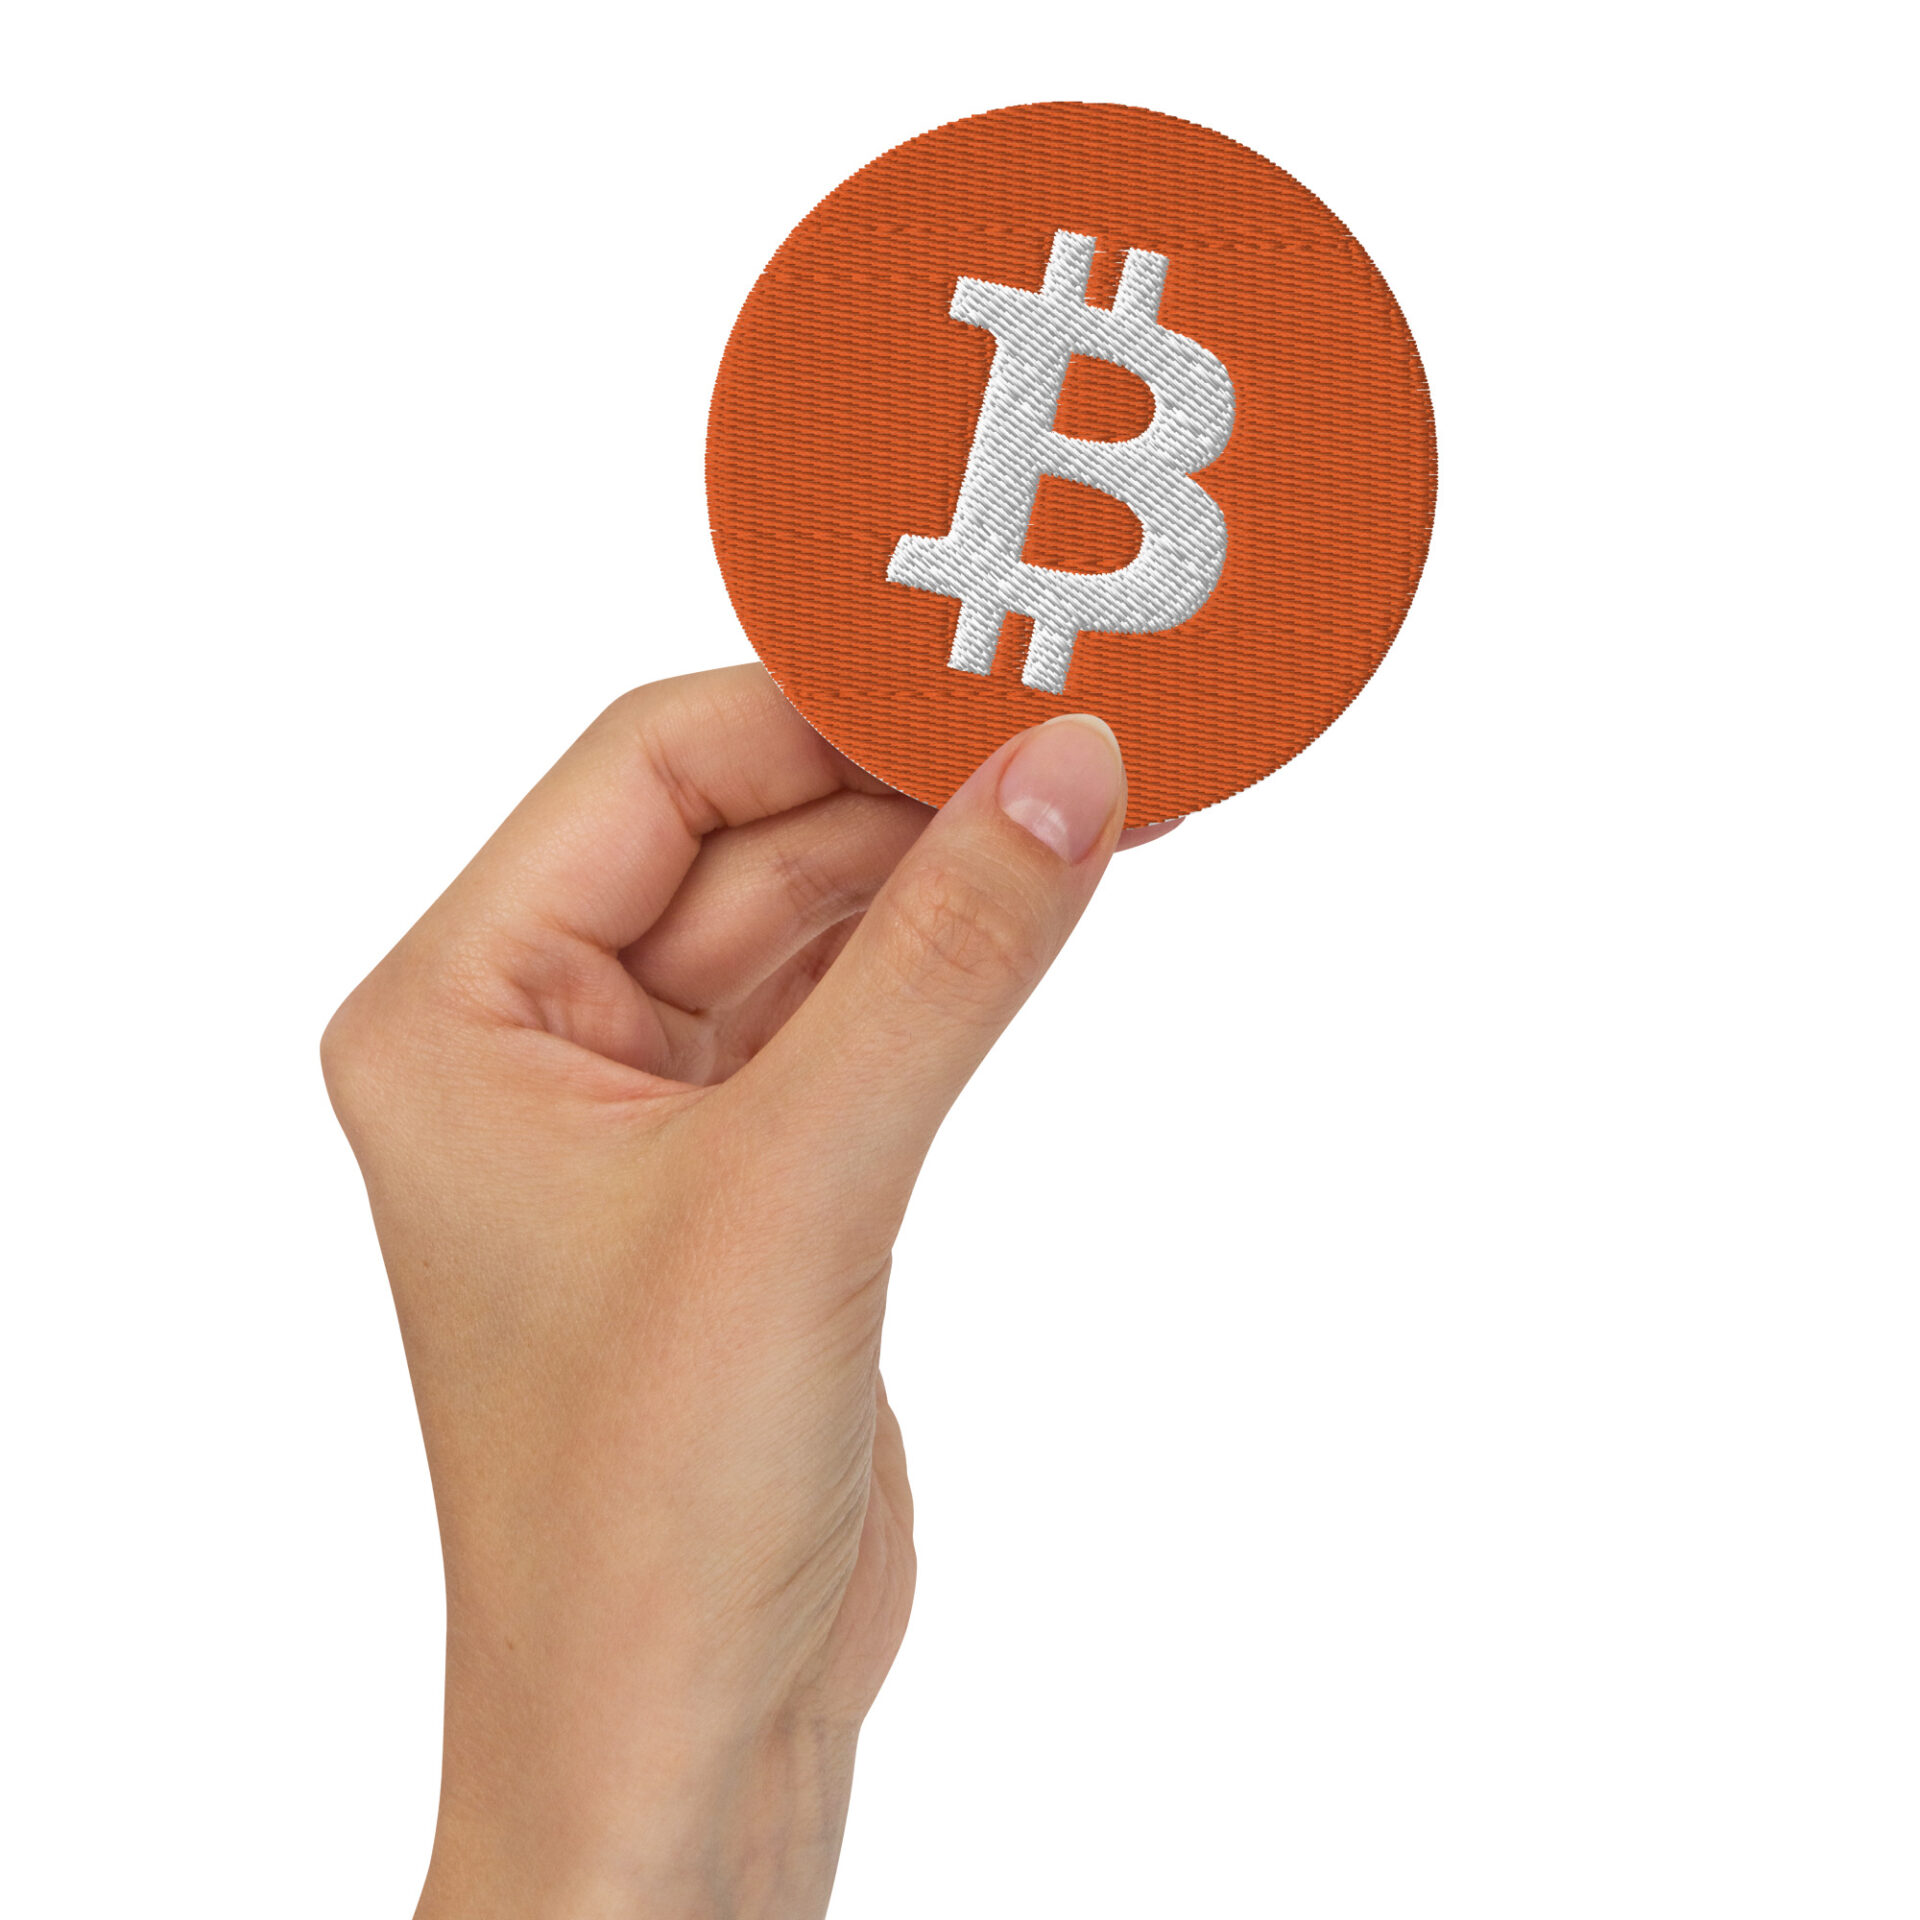 Patch ricamata adesiva con logo Bitcoin